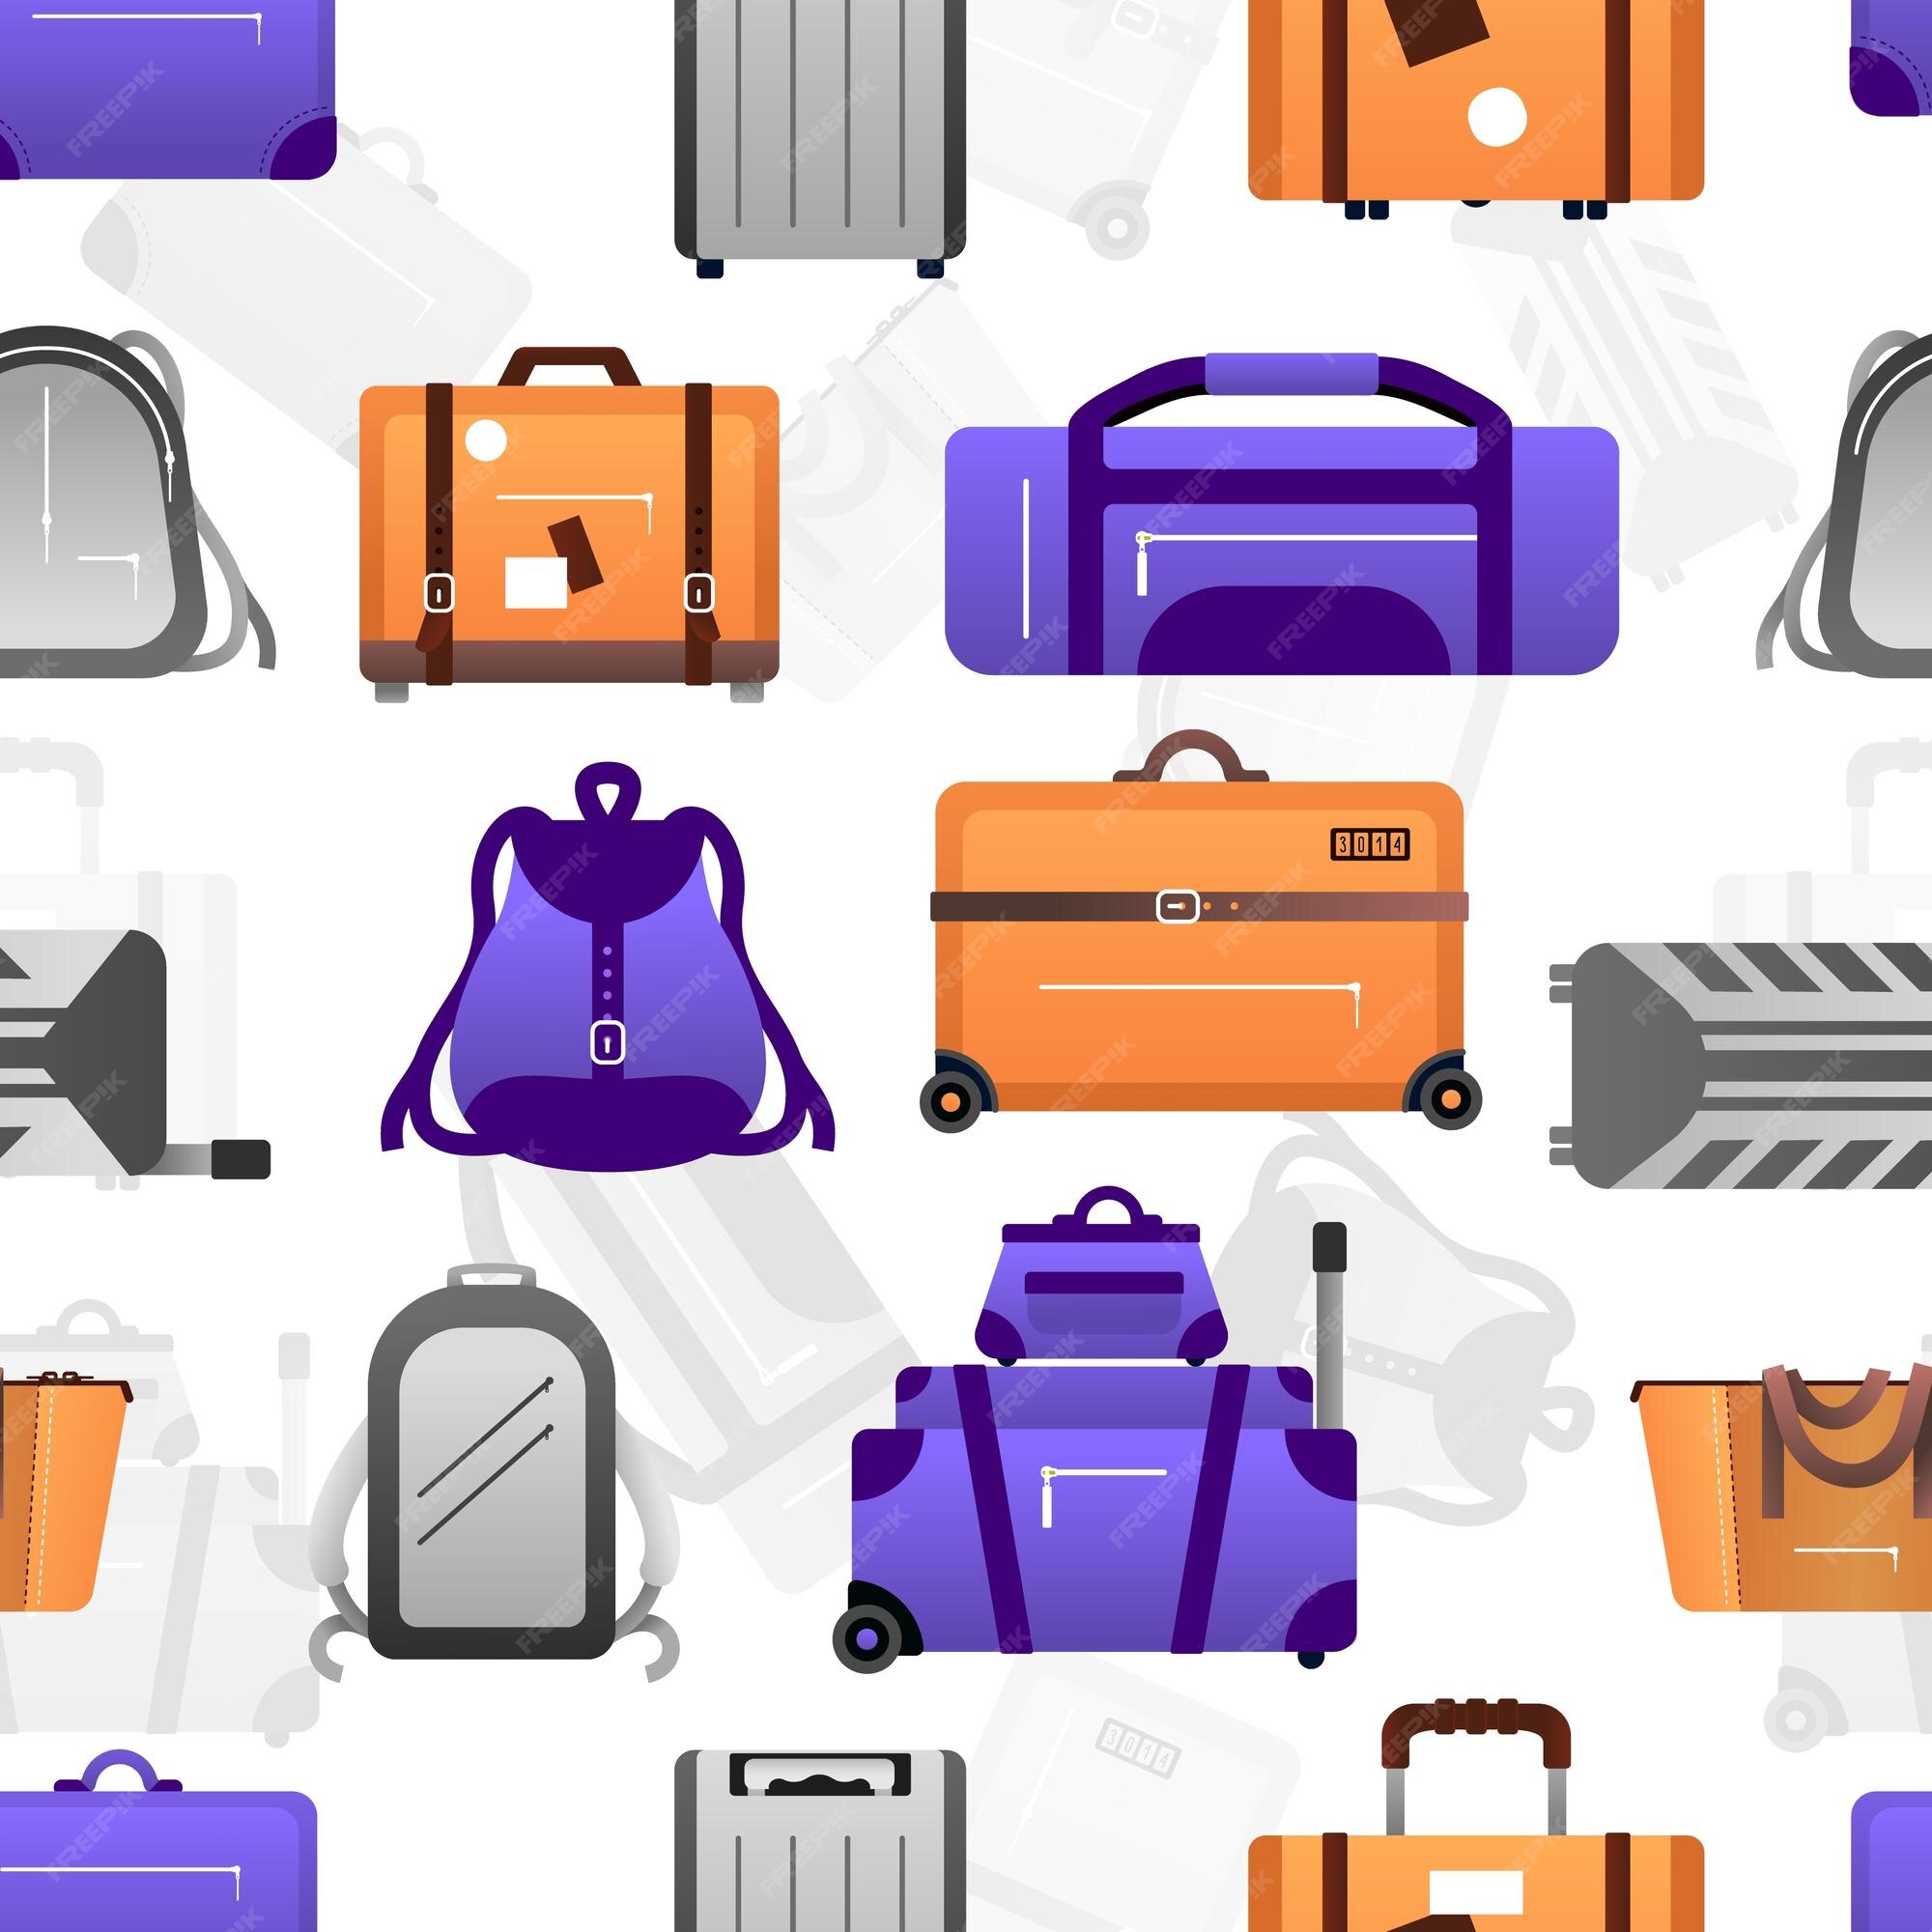 Patrón de maleta textura transparente de de viaje y mochila de viaje equipaje para aventuras bolsos morados y mochilas valijas naranjas sobre ruedas fondo decorativo vectorial | Vector Premium